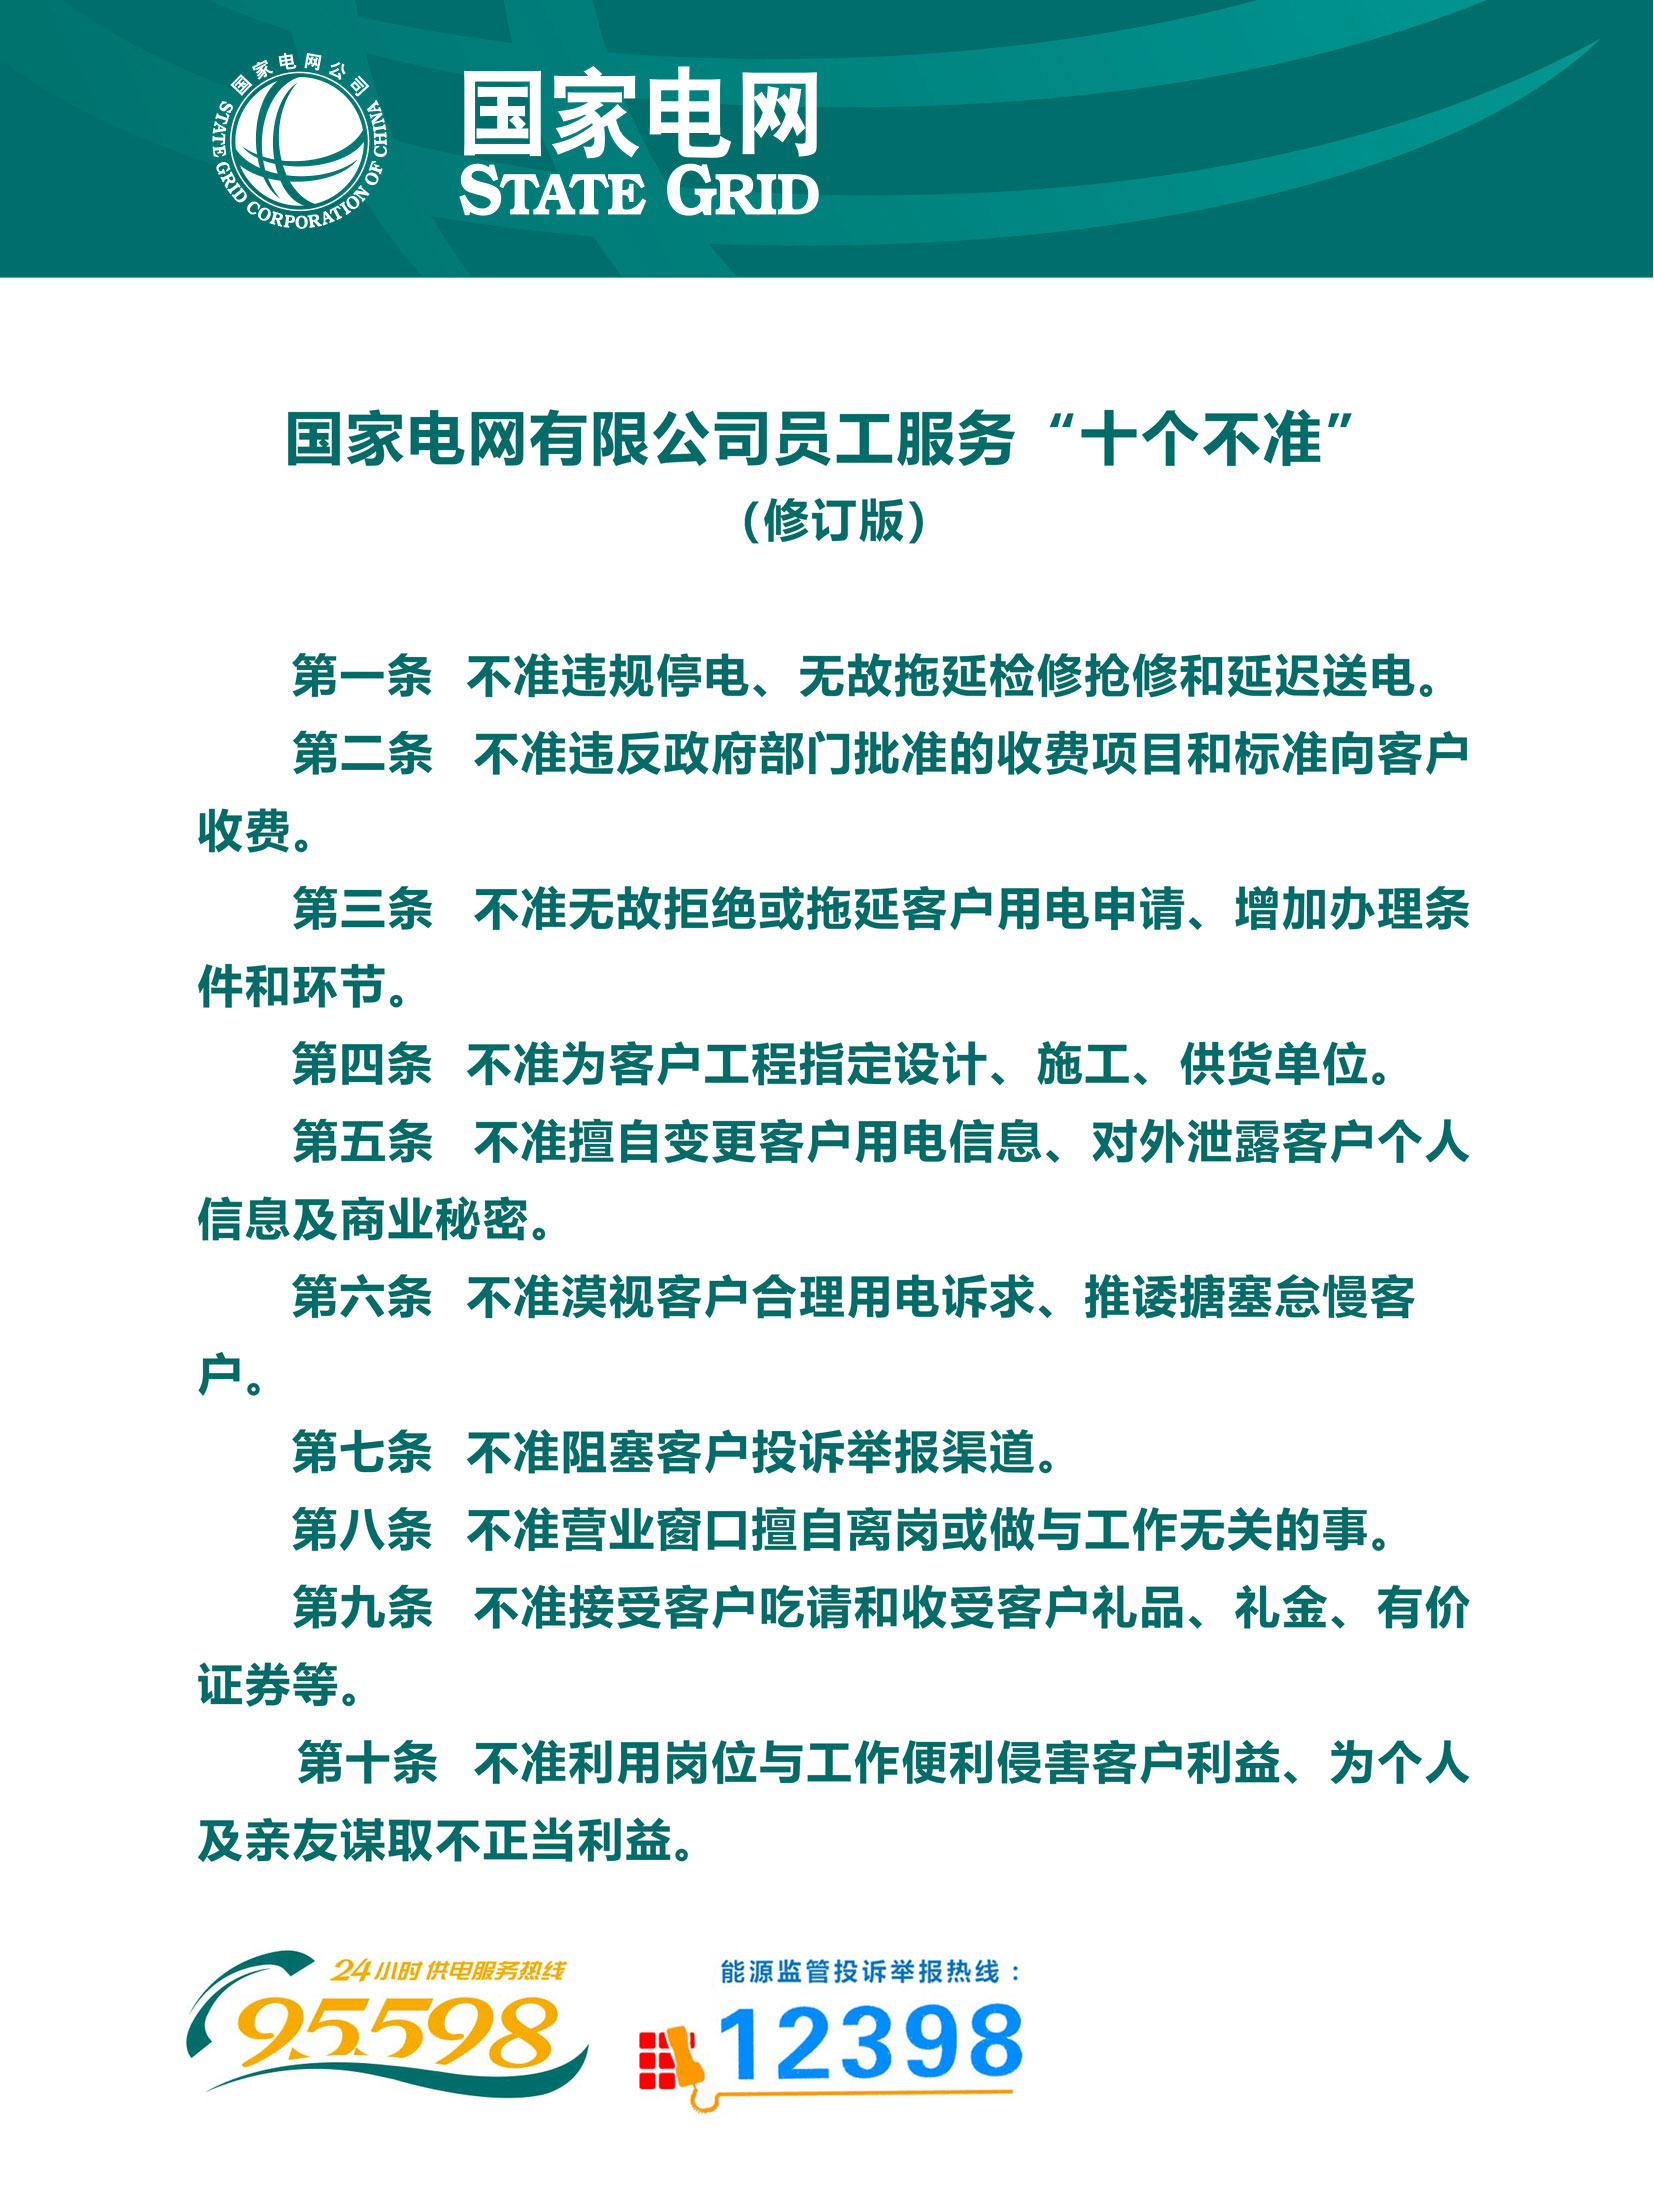 5.国家电网有限公司供电服务“十个不准”（修订版）.jpg